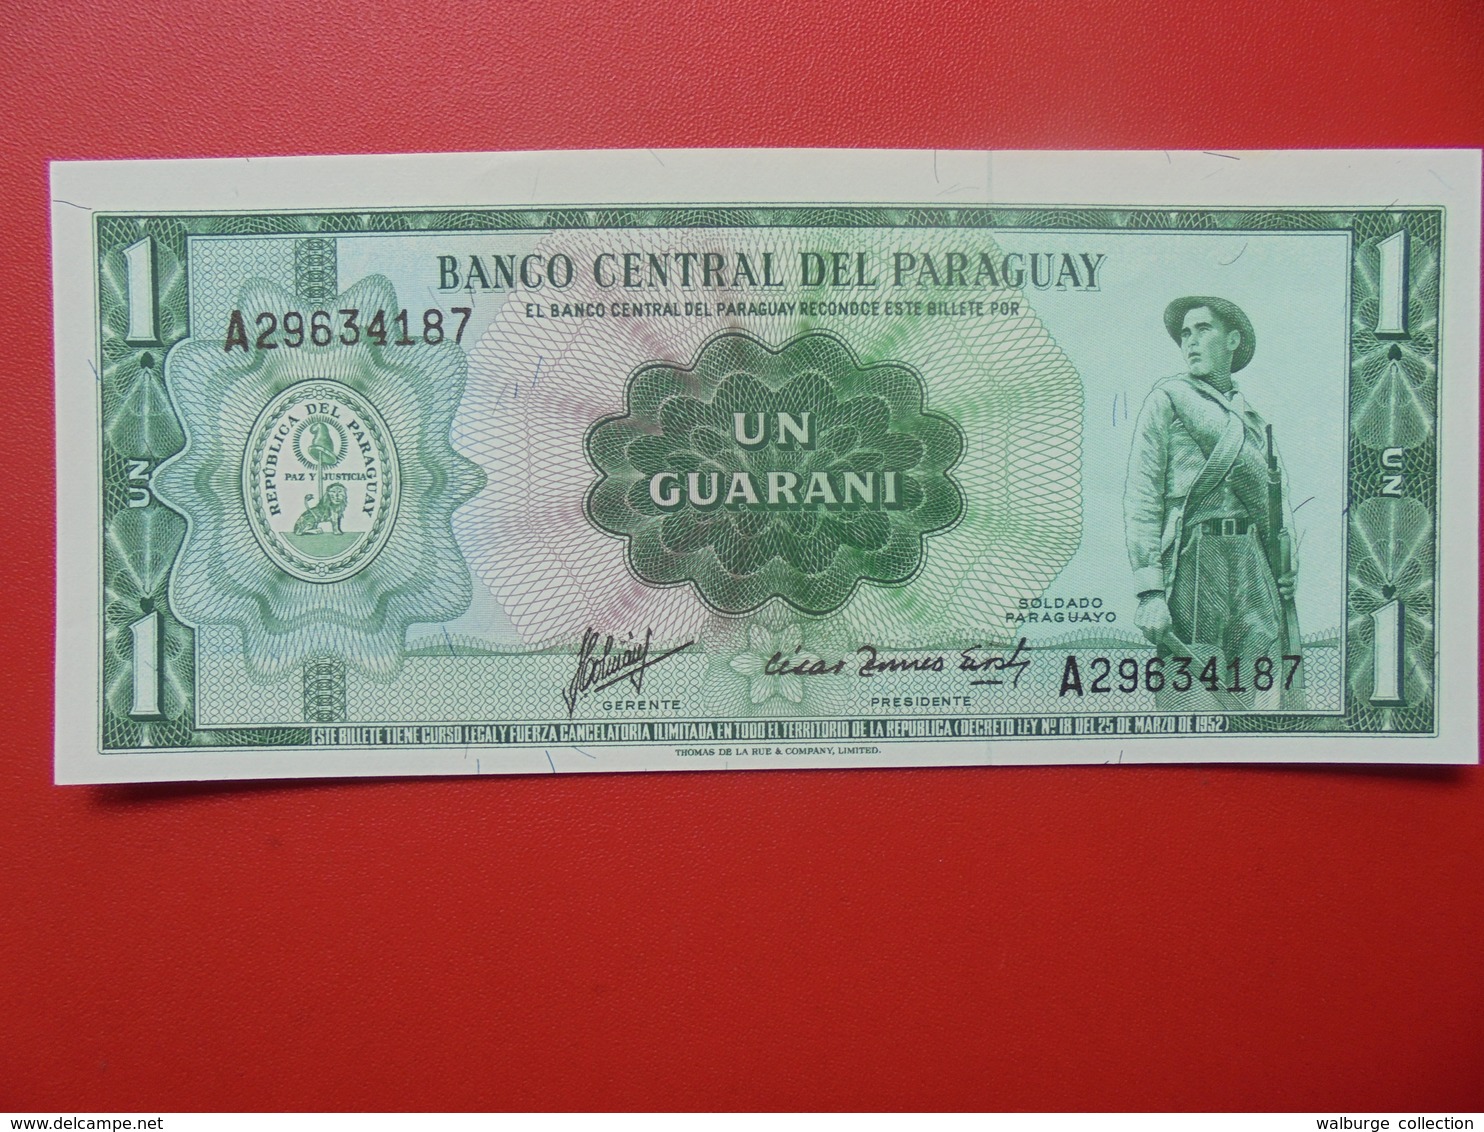 PARAGUAY 1 GUARANI 1952 PEU CIRCULER/NEUF - Paraguay